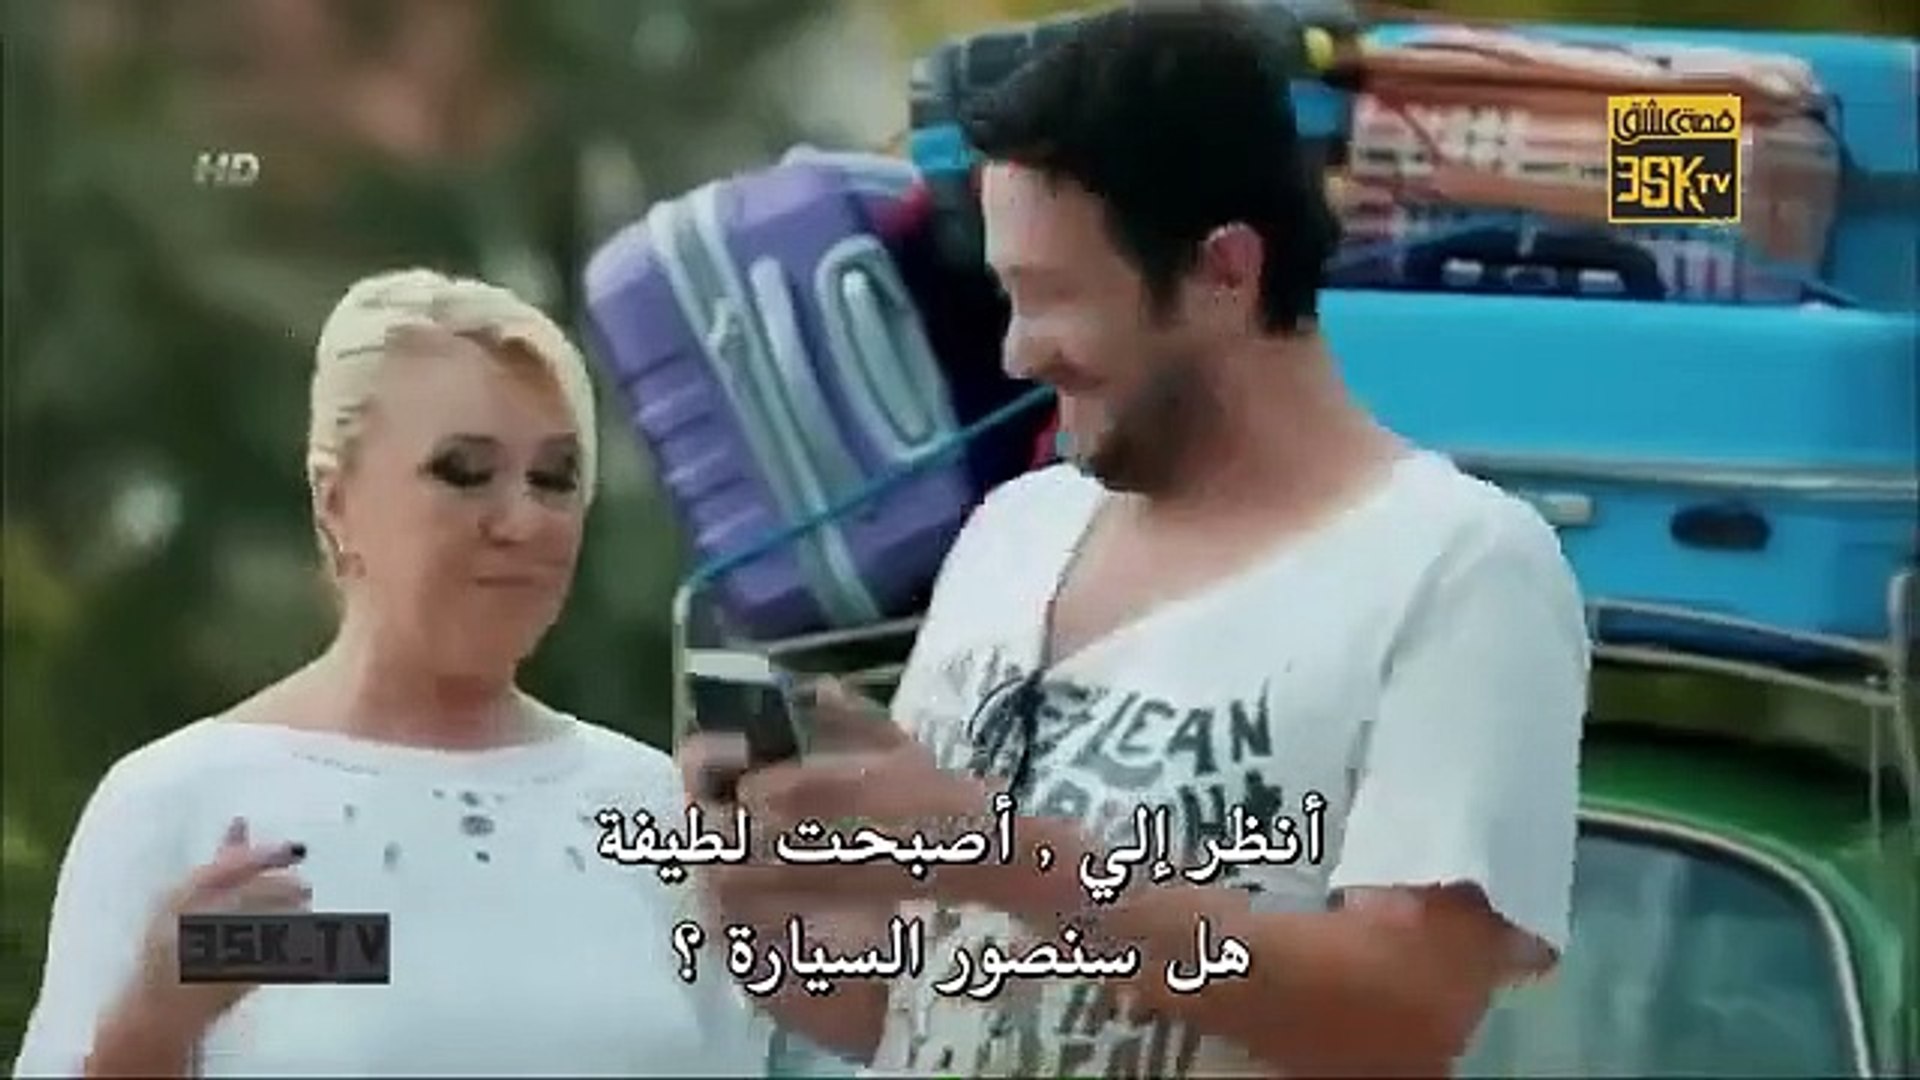 مسلسل حب للايجار - الحلقة 13 مترجمة للعربية Kiralık Aşk - p1 - video  Dailymotion